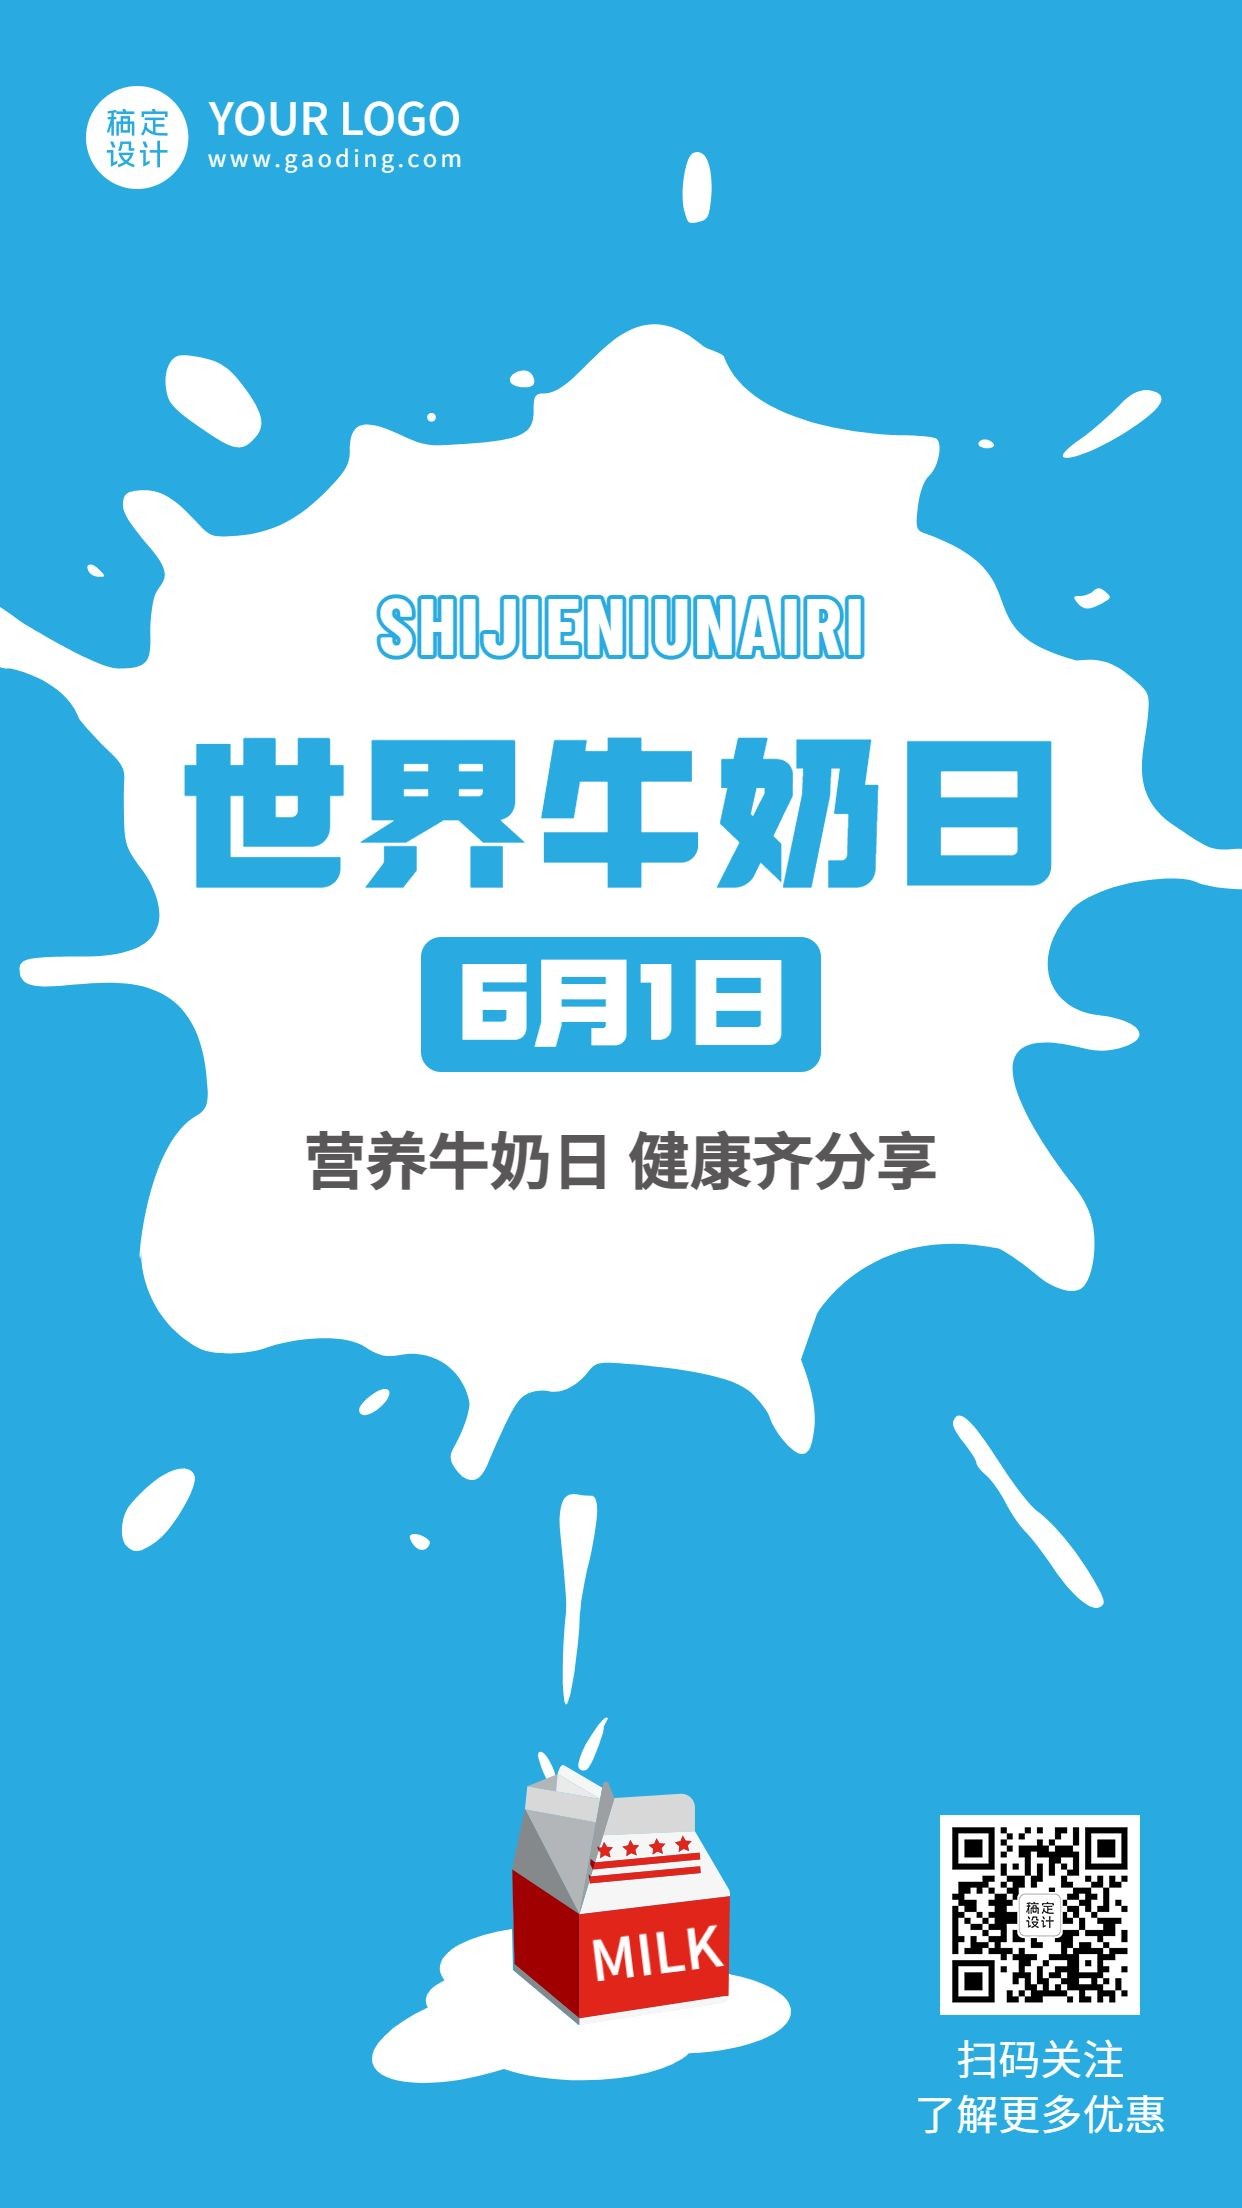 世界牛奶日节日宣传简约手机海报